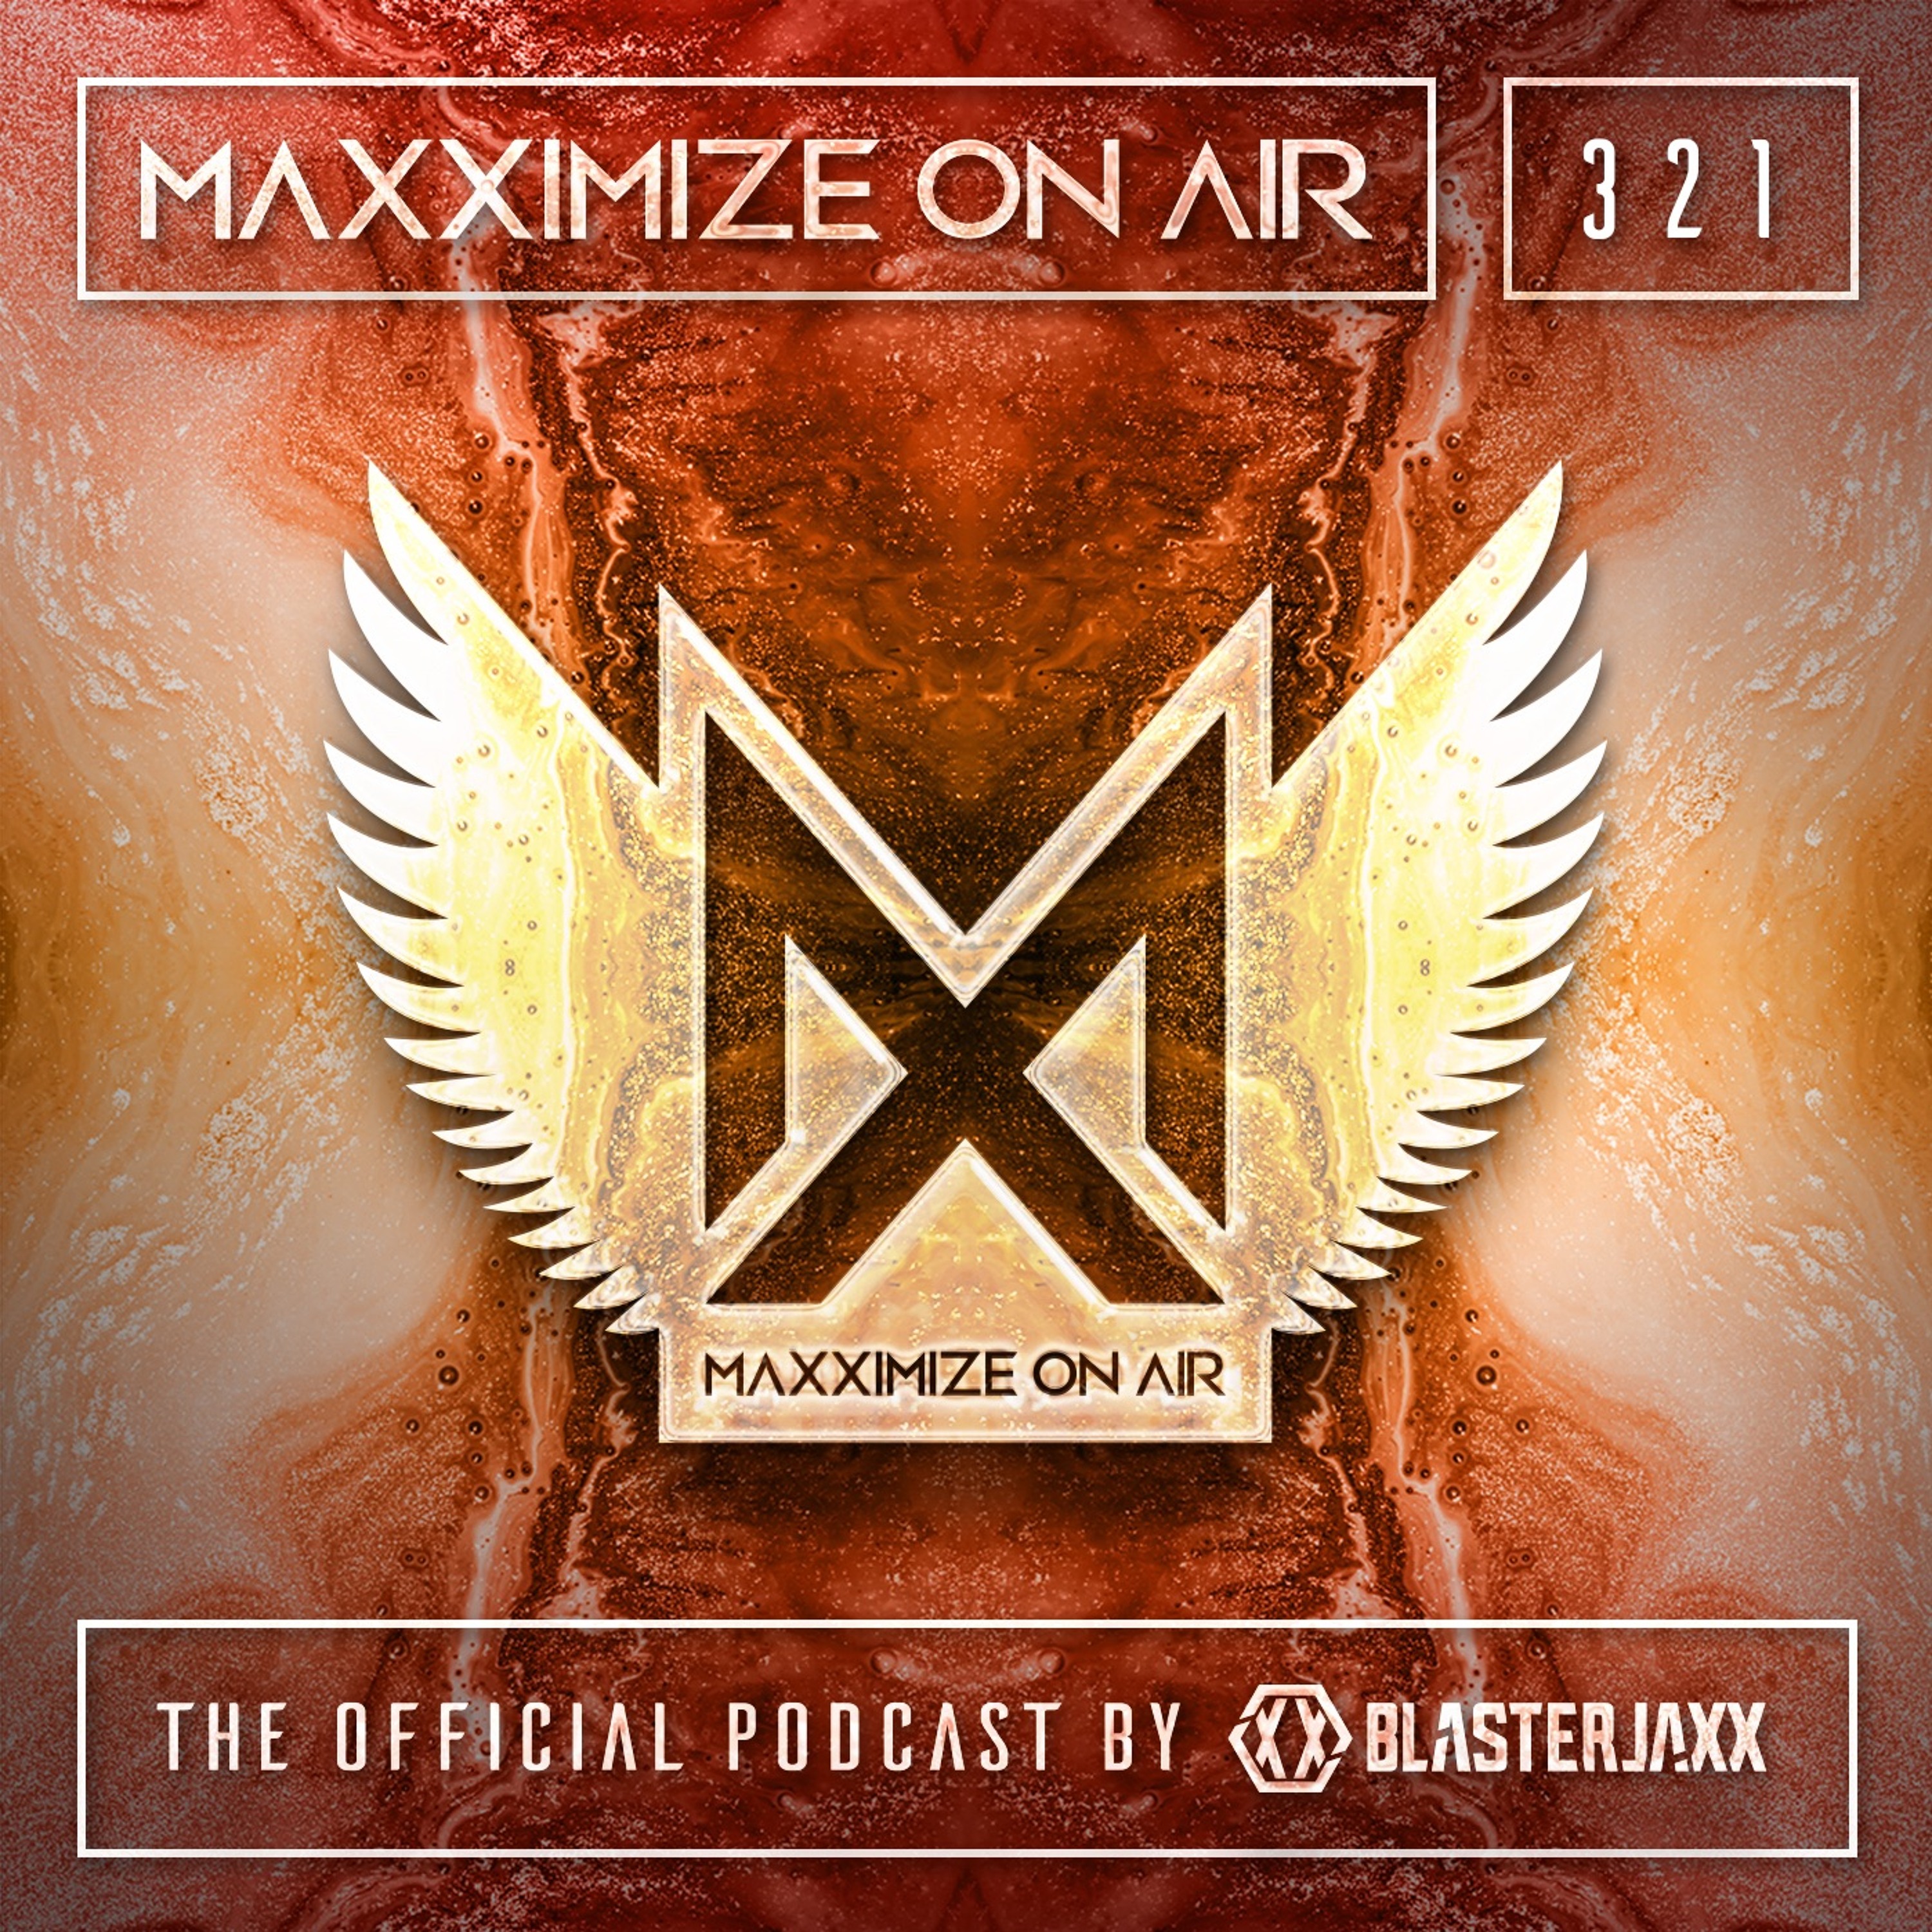 Blasterjaxx present Maxximize On Air #321